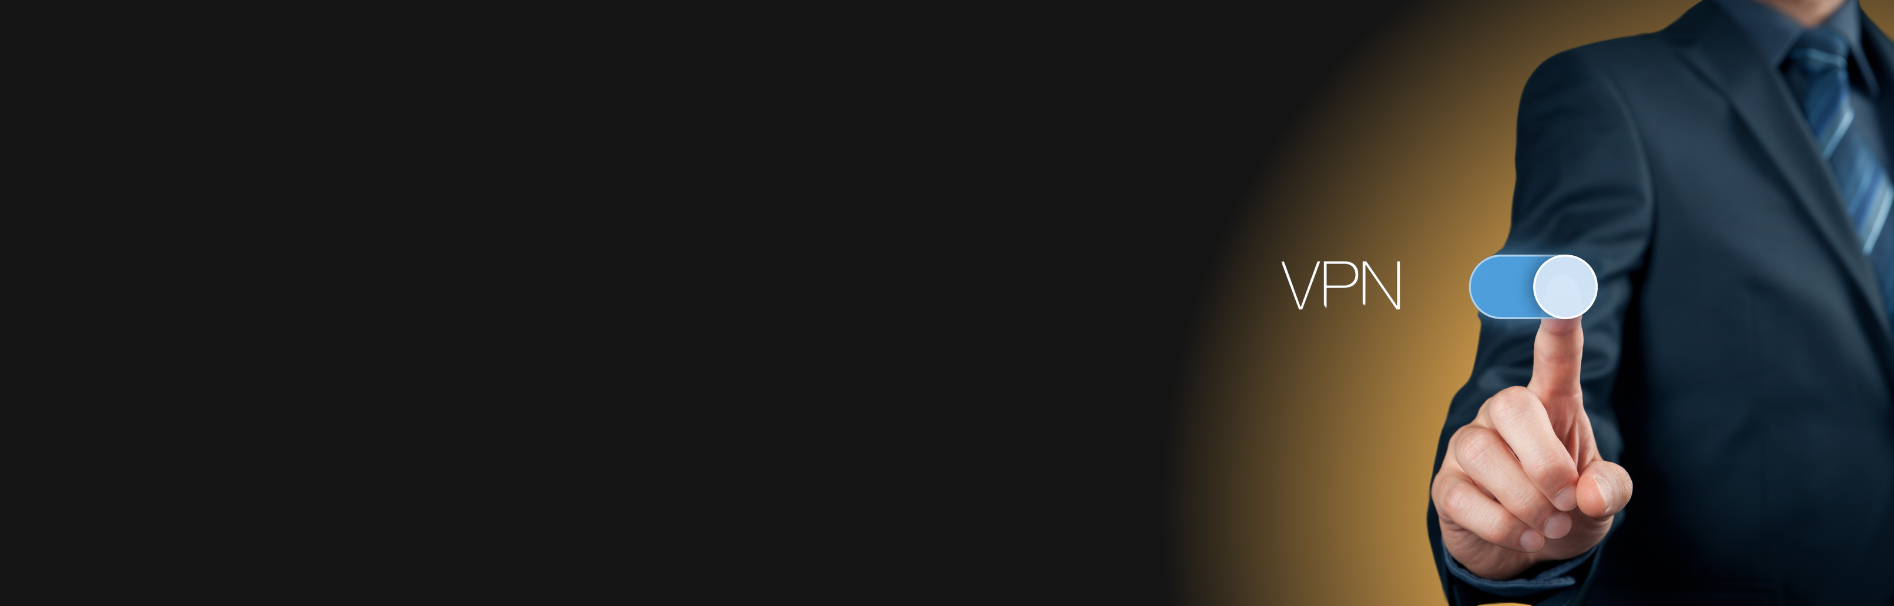 Imagem panorâmica de um homem de negócios vestido formalmente em terno e gravata azul tocando uma tela virtual com a palavra "VPN" escrita em letras grandes ao lado. Ele está interagindo com um botão de interface gráfica do usuário (GUI) azul e branco, simbolizando o ato de ativar uma VPN.